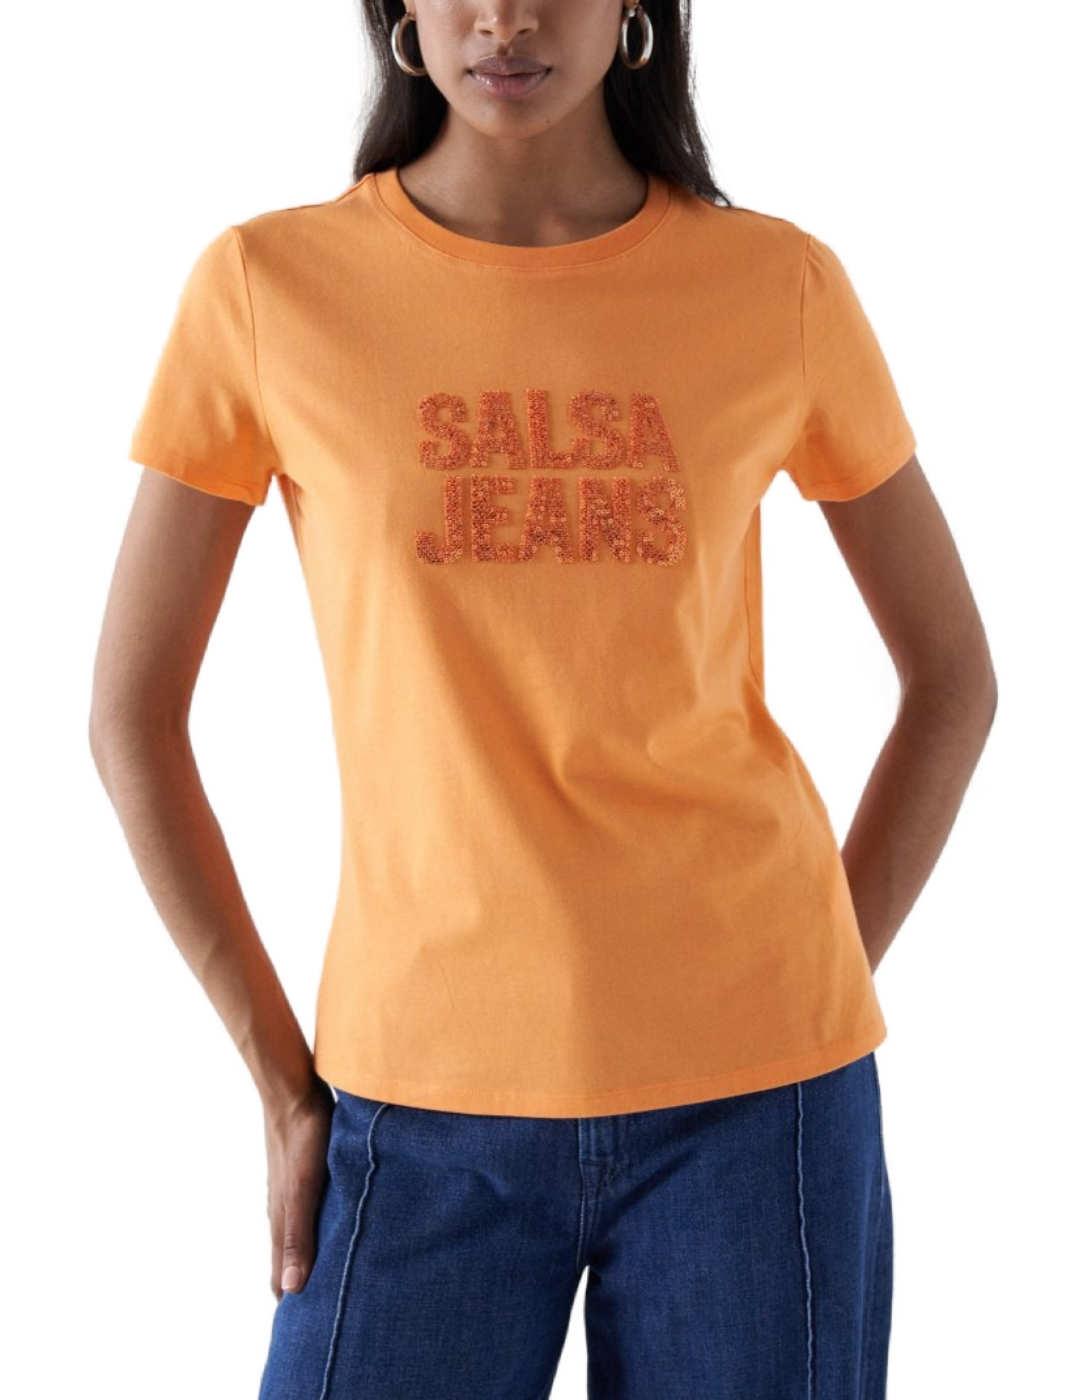 Camiseta Salsa naranja con cuentas manga corta de mujer